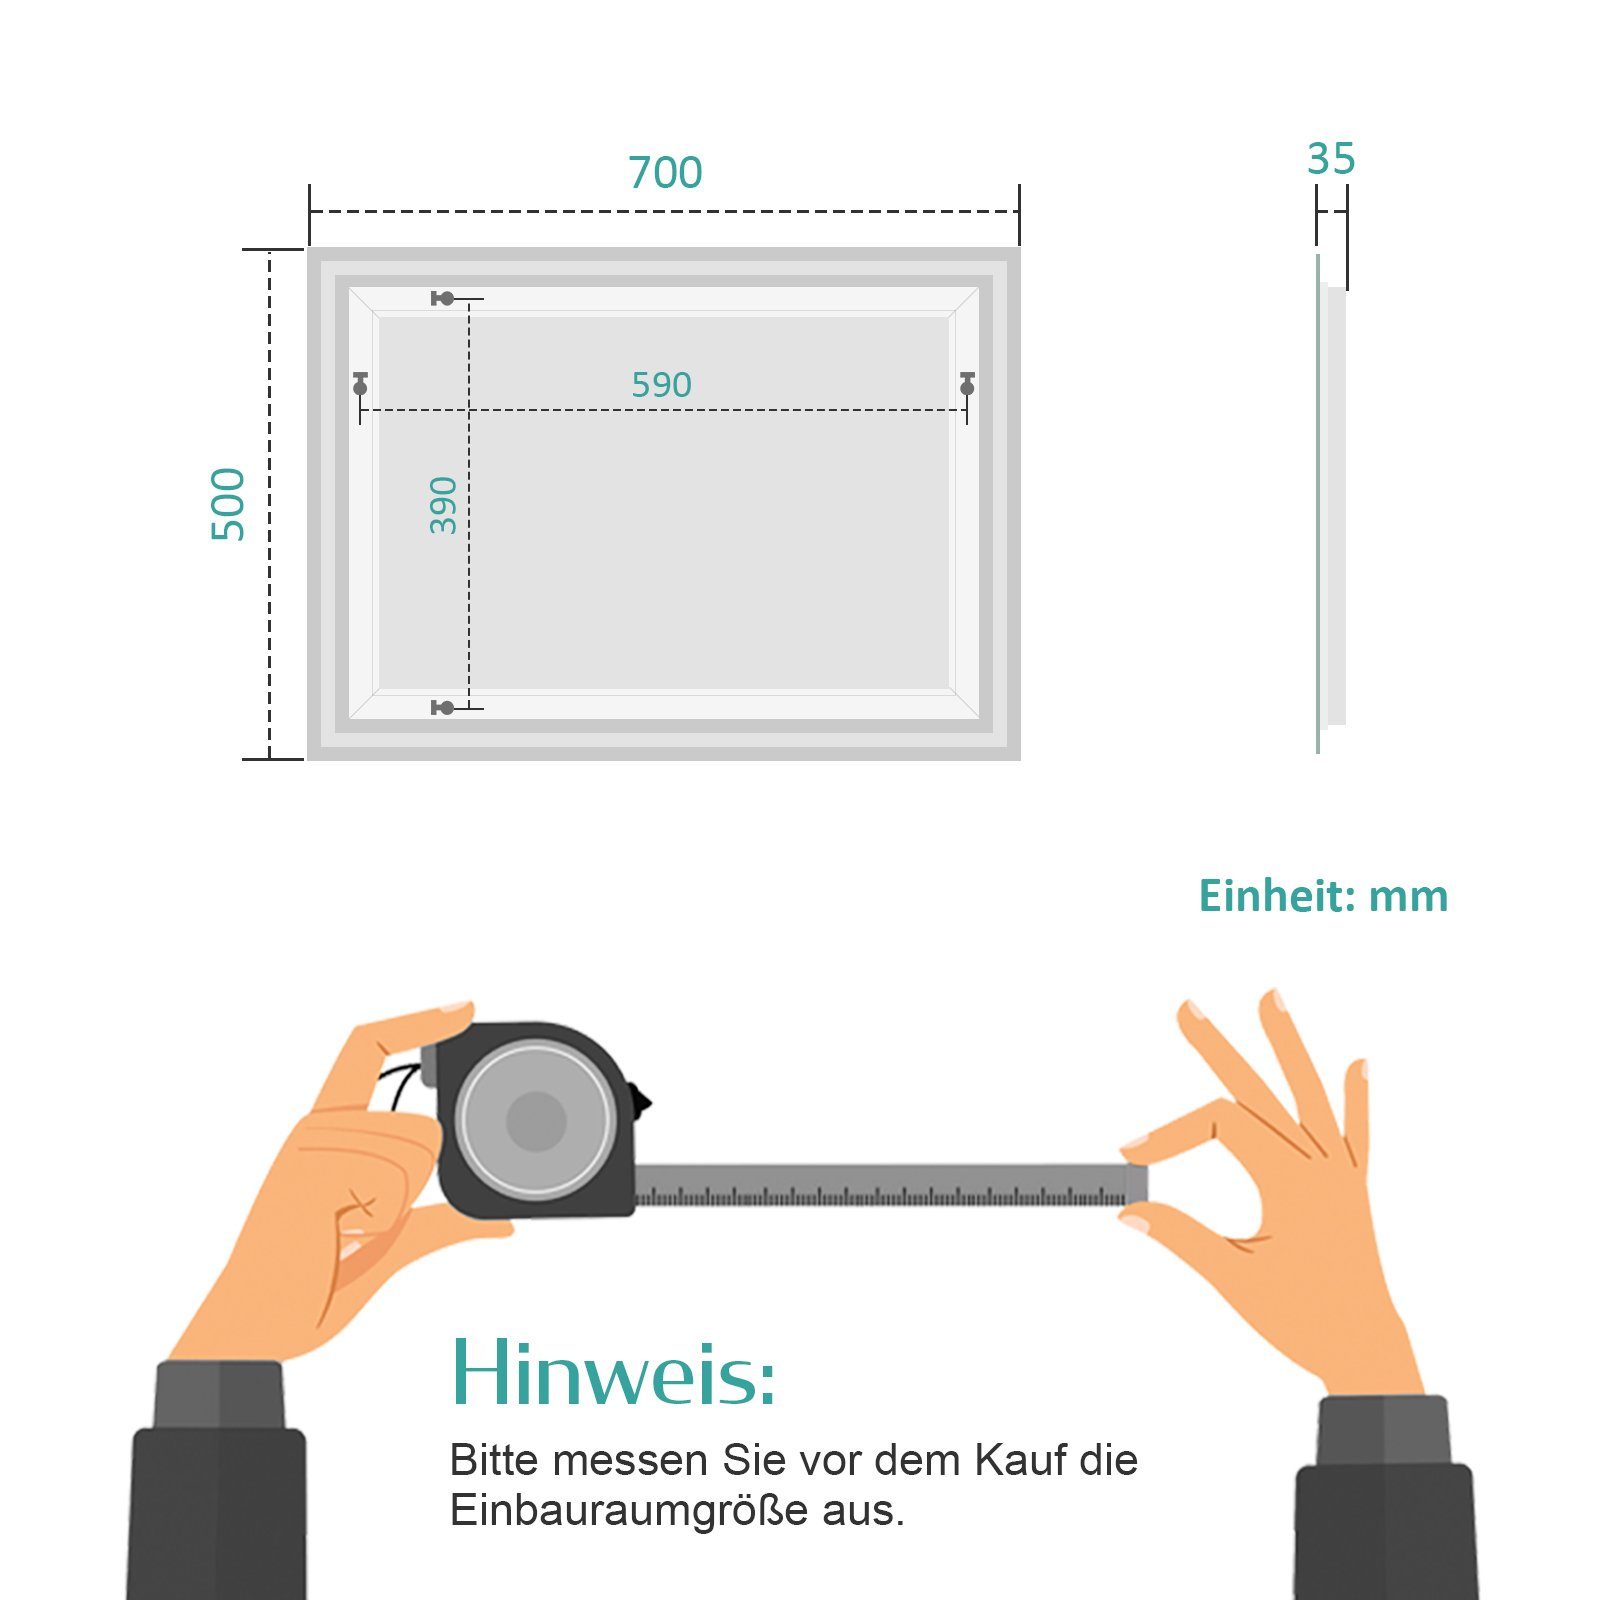 EMKE Badspiegel LED Badspiegel Beschlagfreiheit, Bewegungssensor 3 Beleuchtung Dimmbarem Touch-Schalter des Lichts mit Wandspiegel, Farben mit und